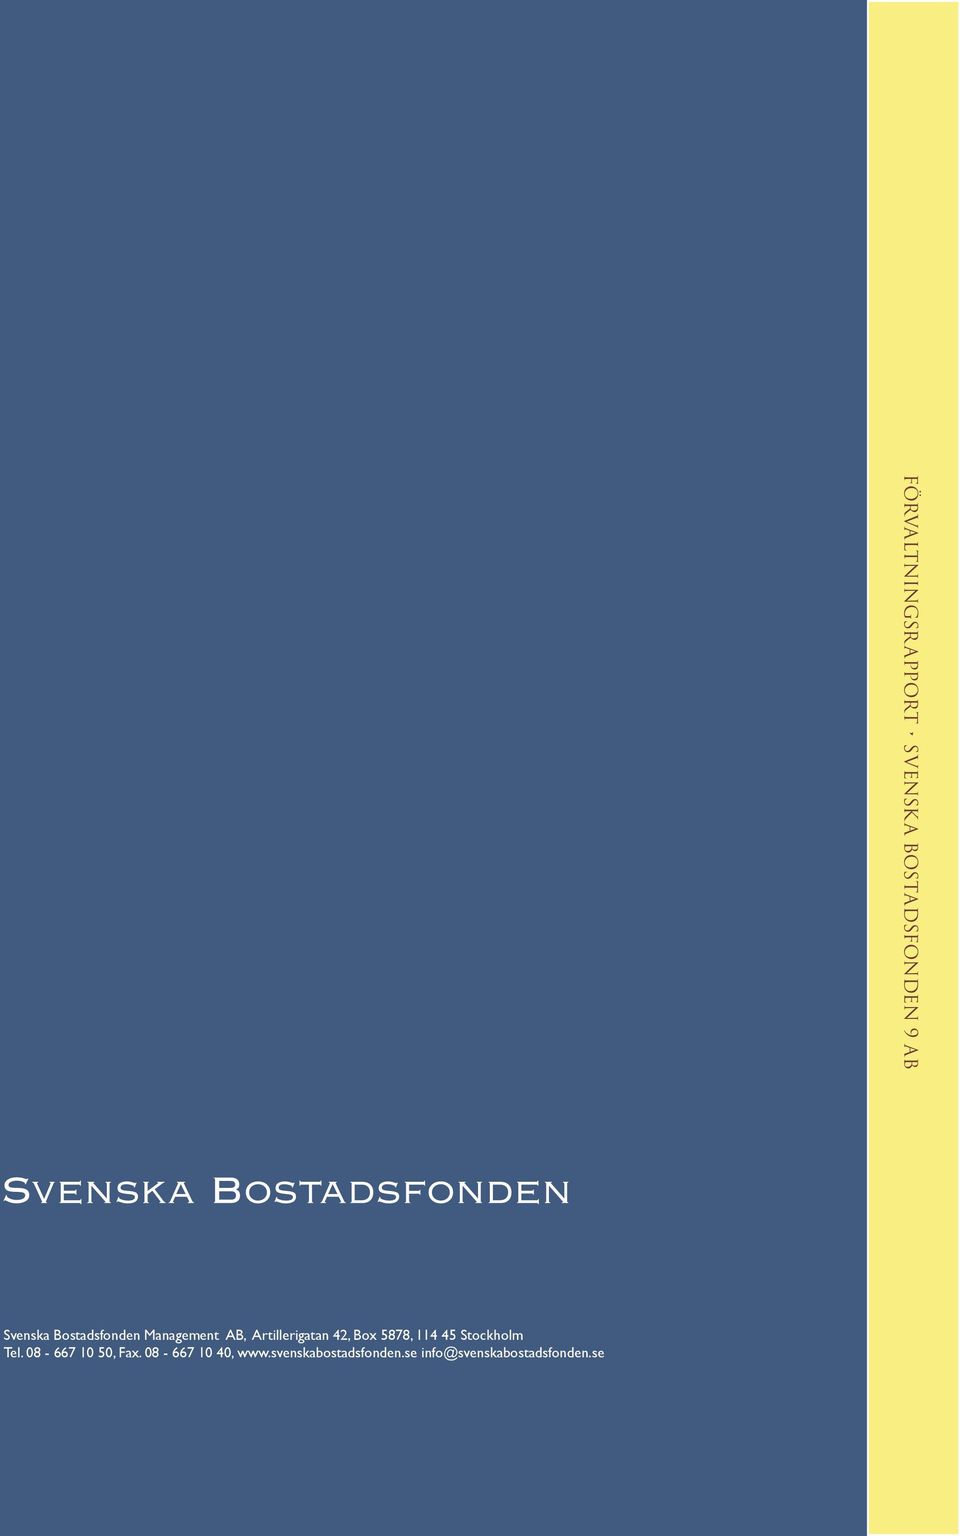 08-667 10 40, www.svenskabostadsfonden.